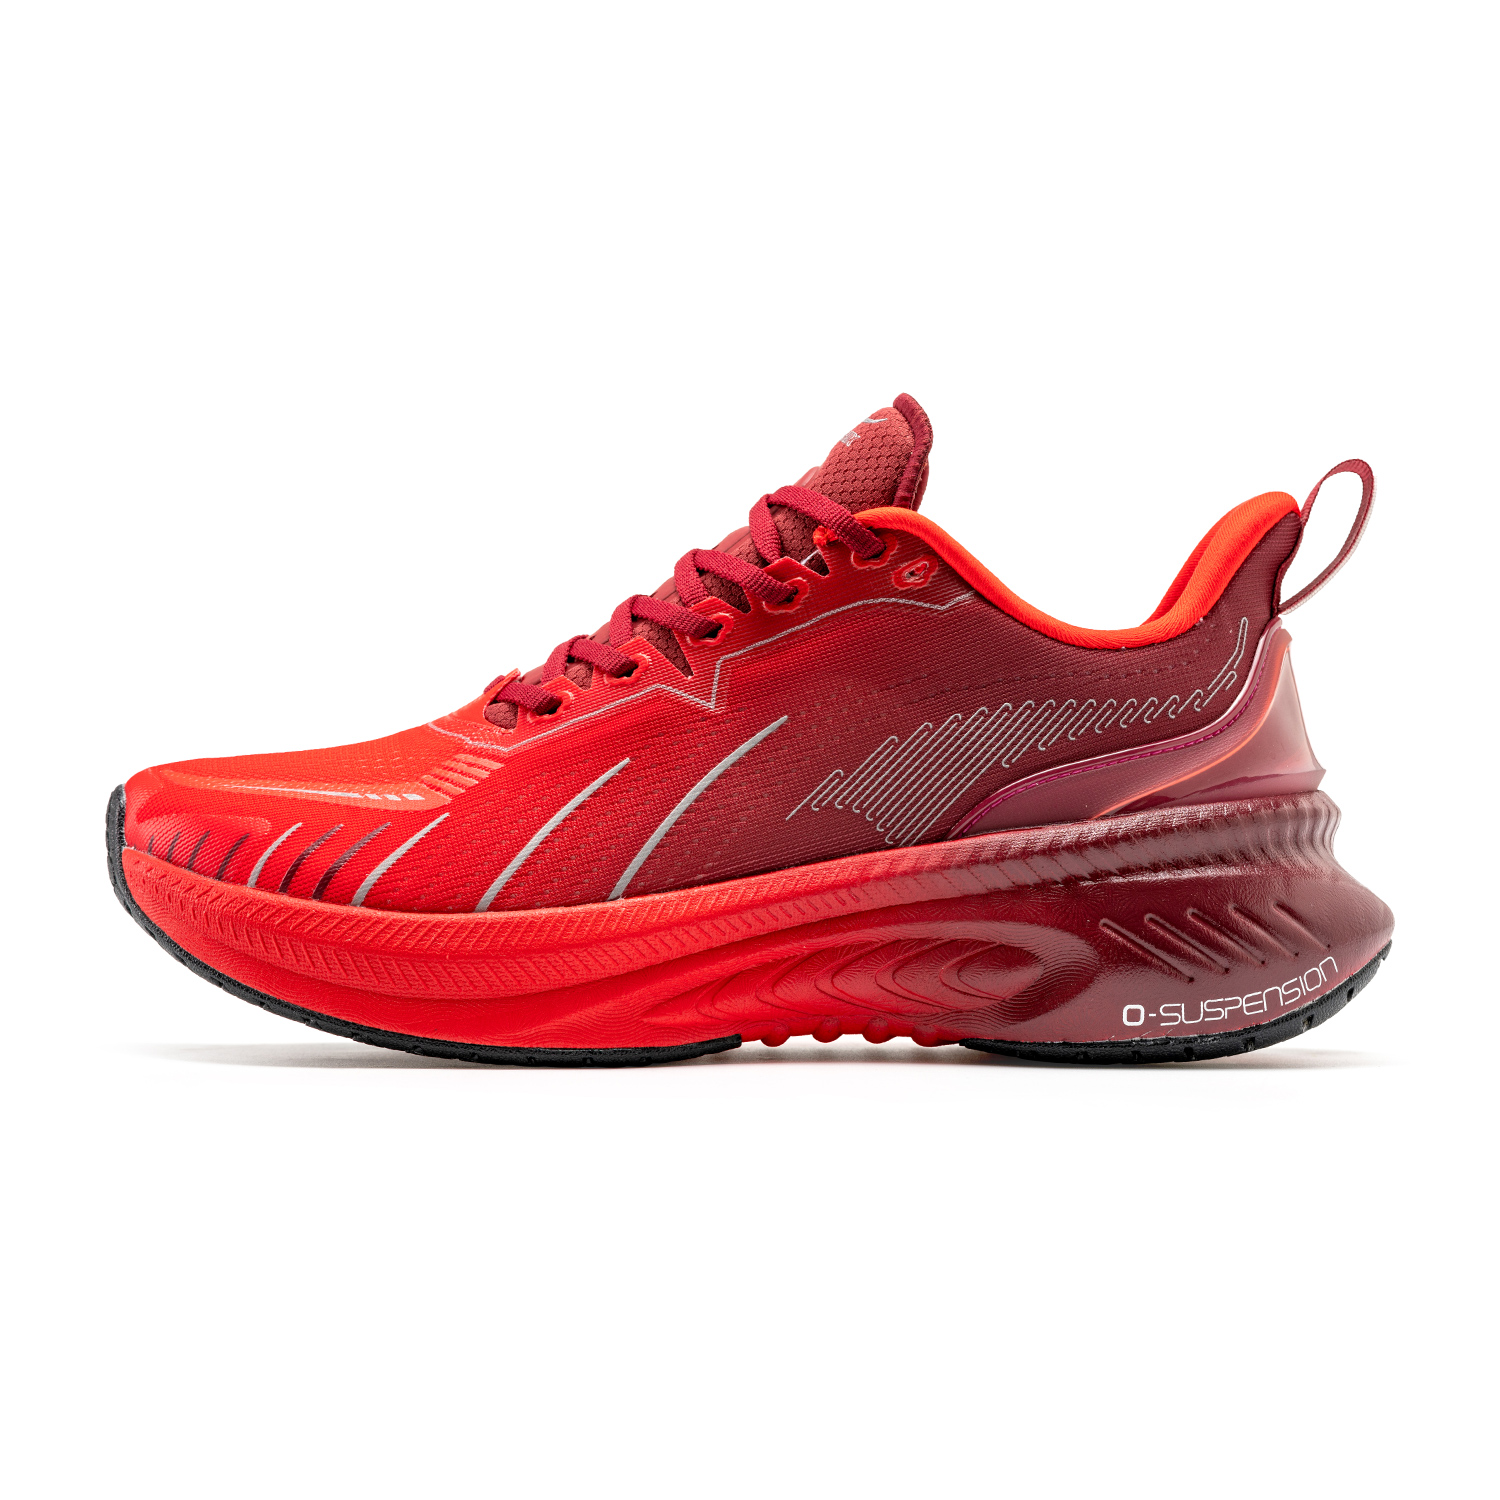 Red Running Shoes ONEMIX Original Sneakers for Men Women